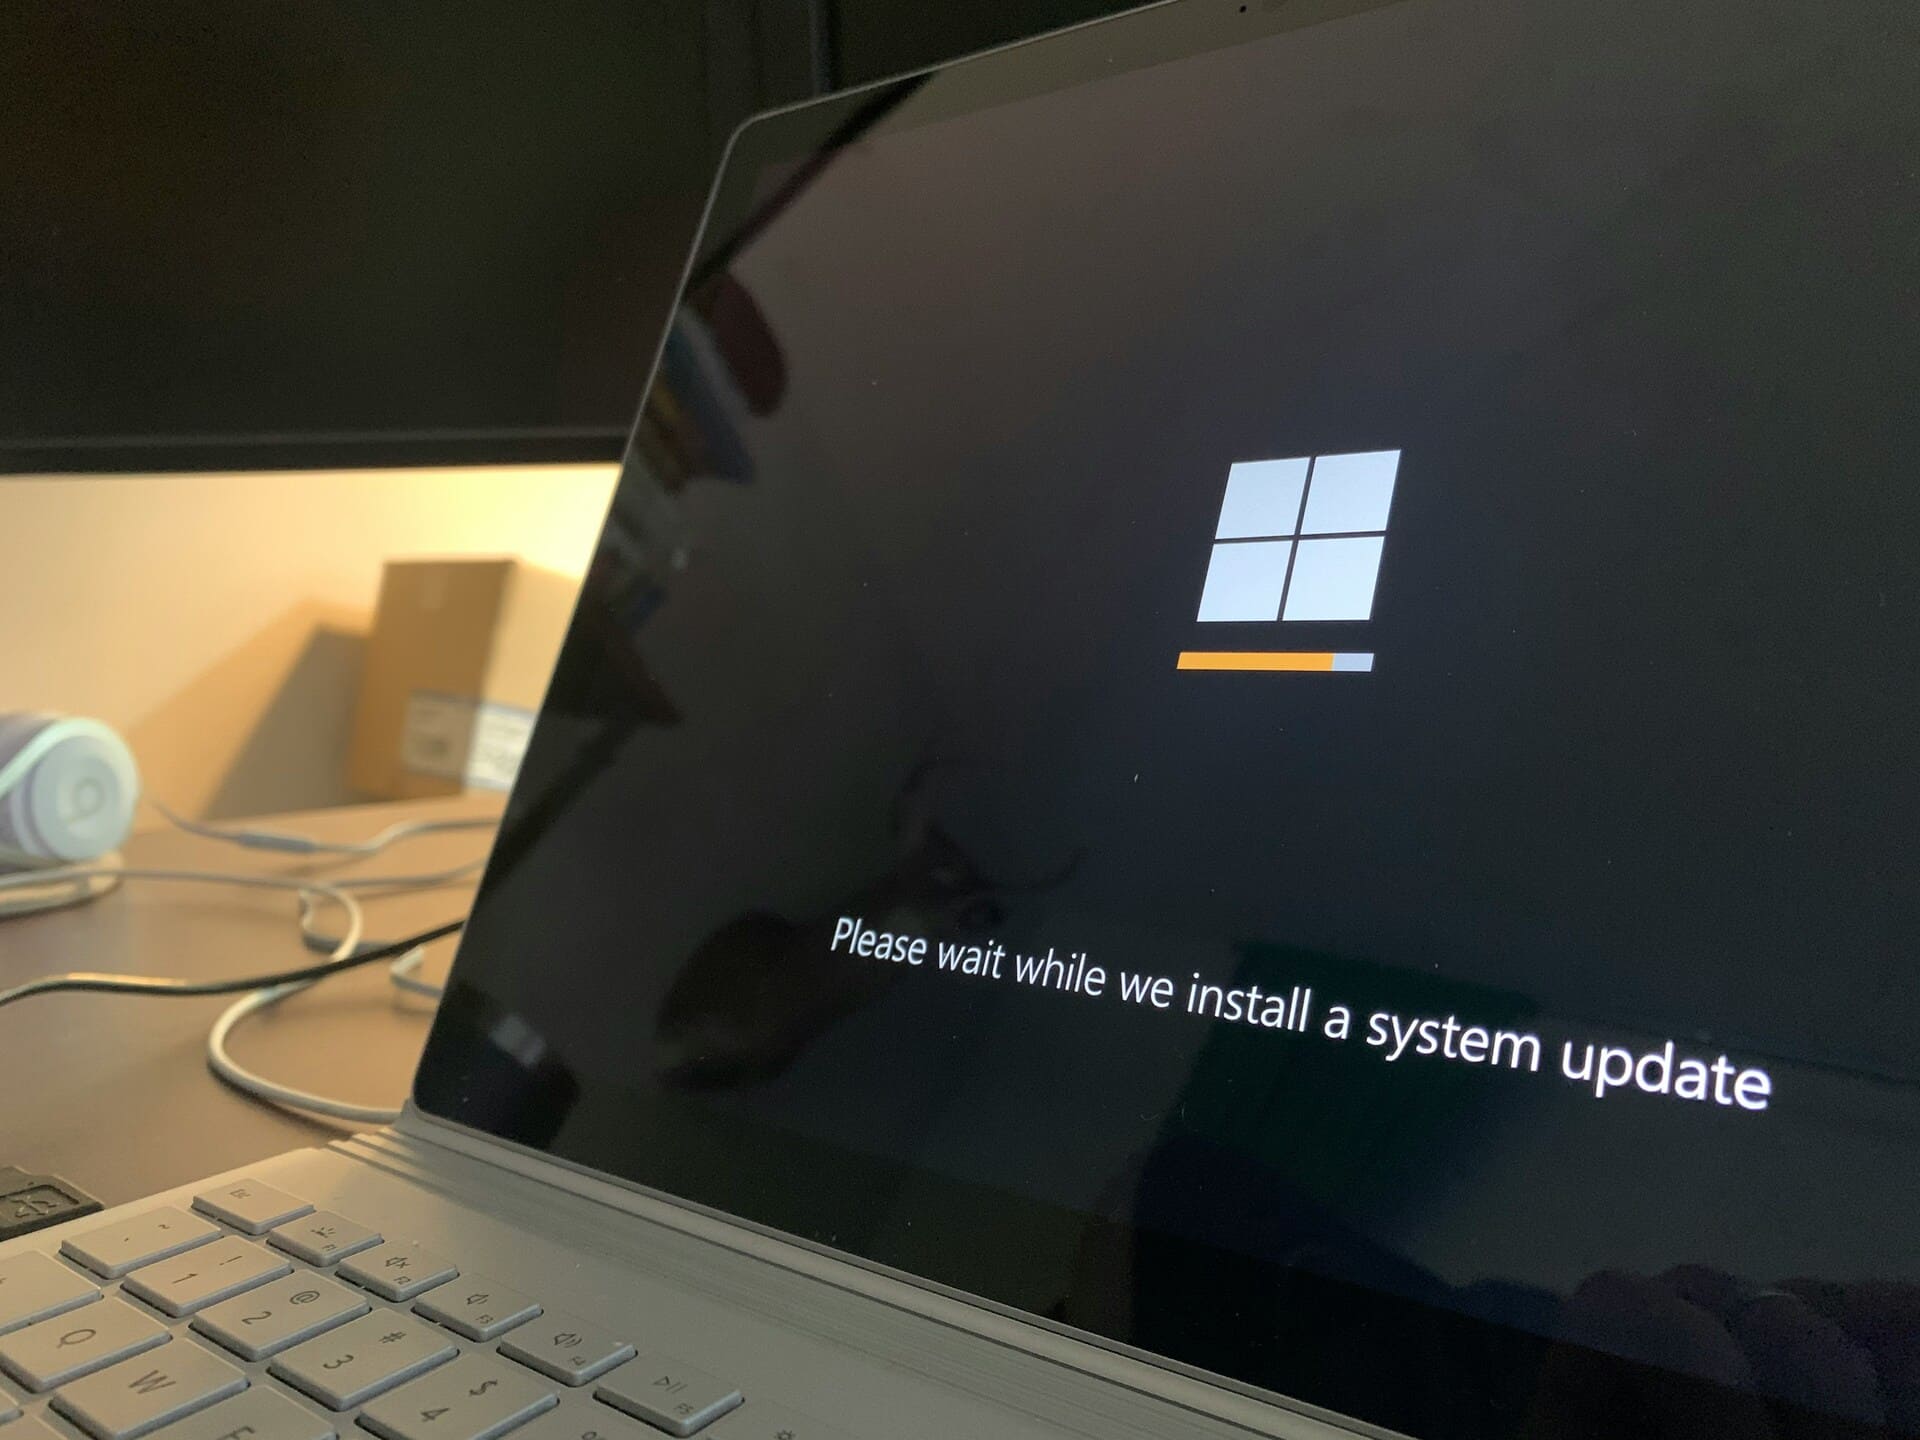 Windows-Update in Bearbeitung Halten Sie Ihr System auf dem neuesten Stand, um von den neuesten Benachrichtigungsfunktionen zu profitieren